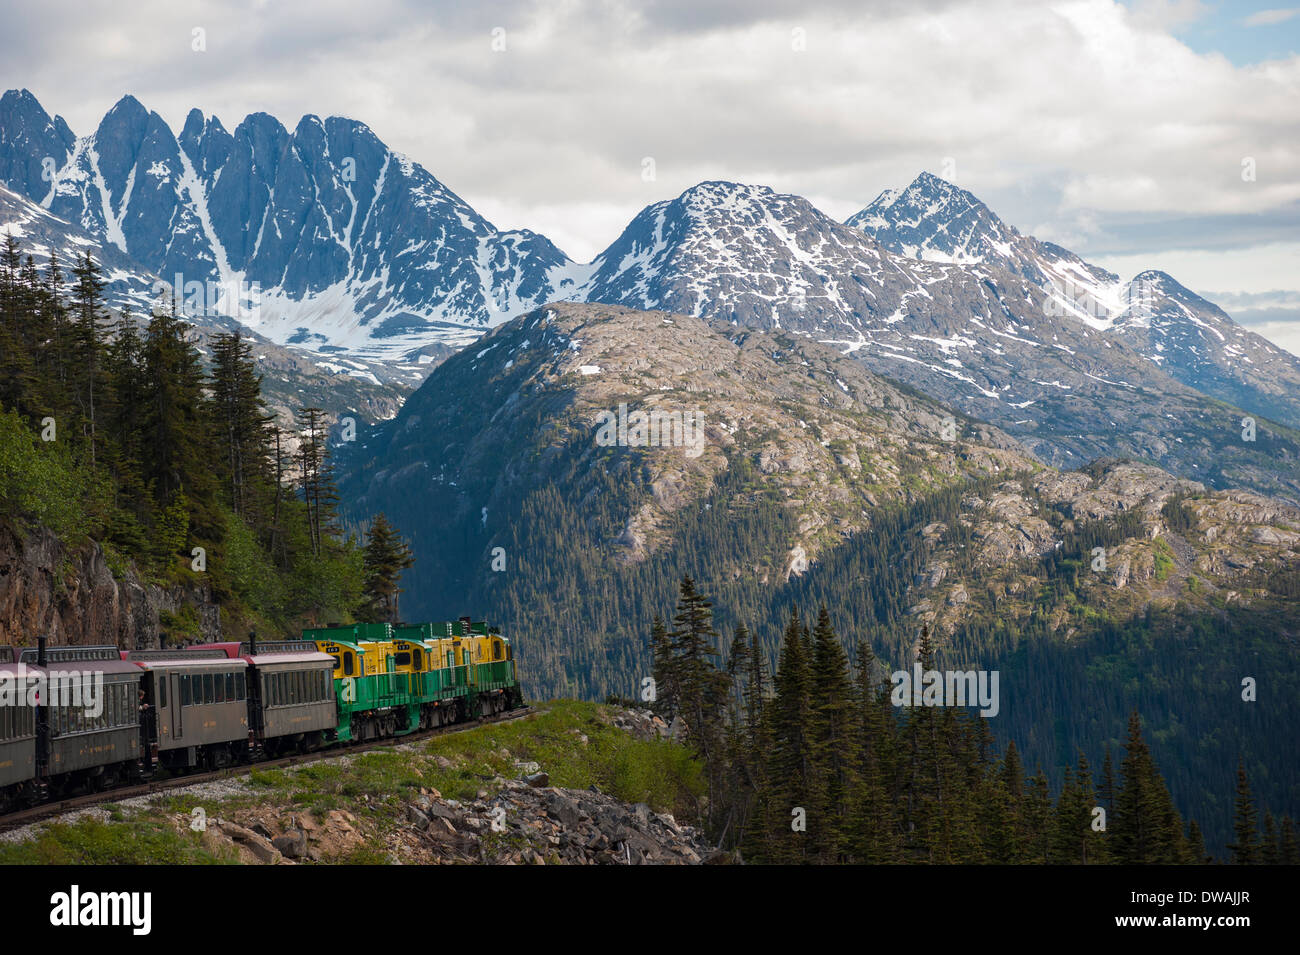 Photo horizontale de la ville historique de White Pass Yukon Route Railroad train, près de Skagway, Alaska Banque D'Images